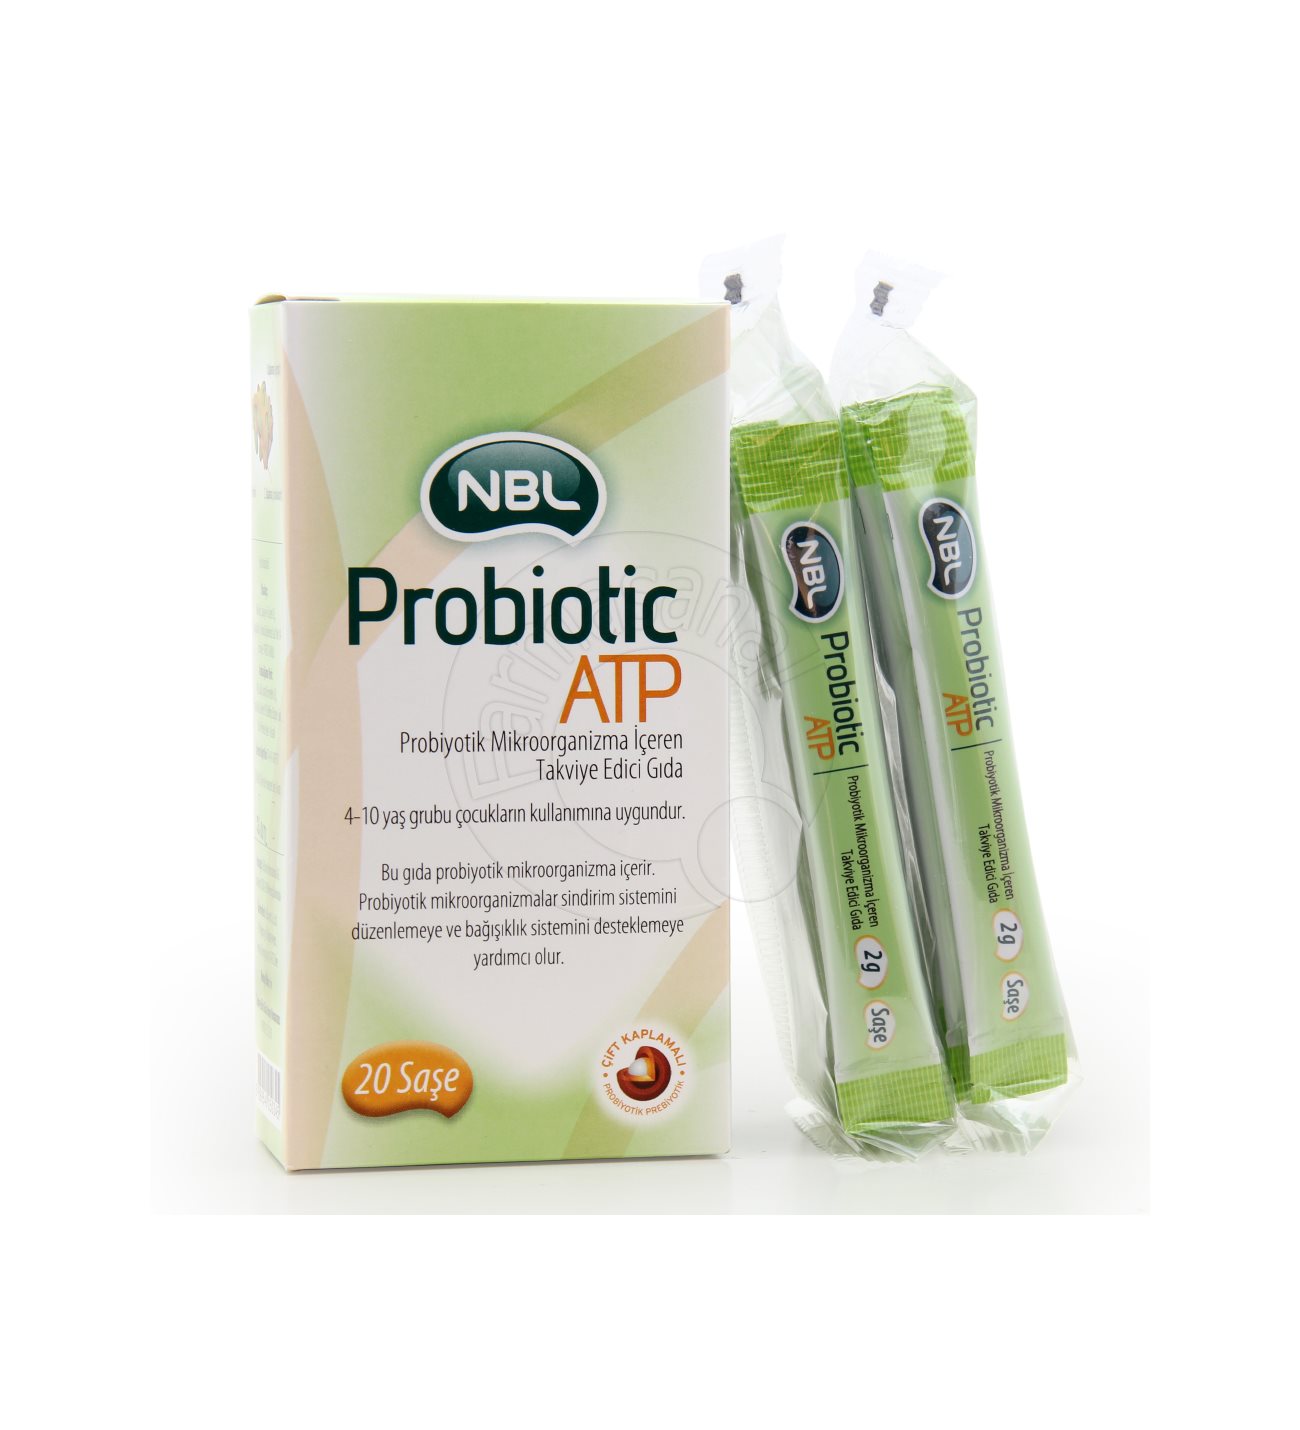 NBL - Probiotic ATP 20 Saşe 8699540250345 Fiyatı Özellikleri ve Faydaları